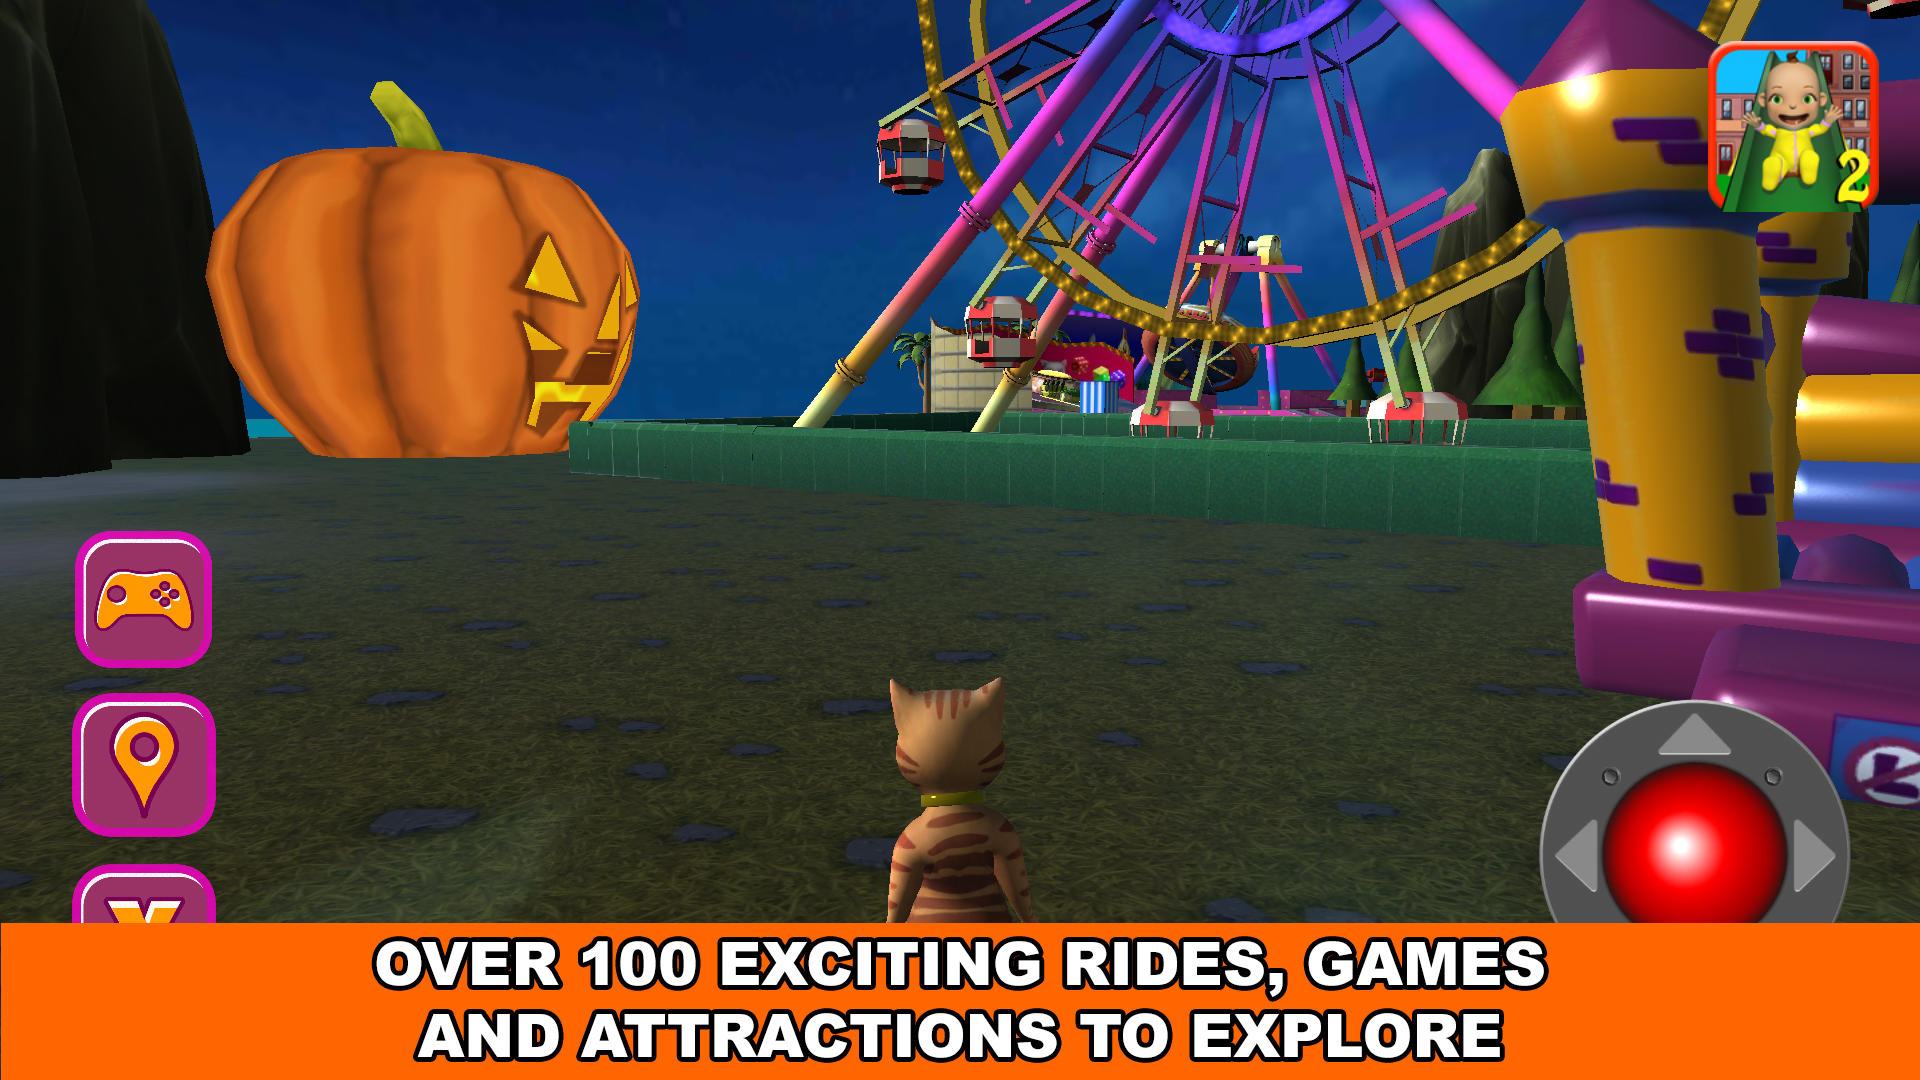 Screenshot 1 of Cat Halloween Theme Park 3D 231227